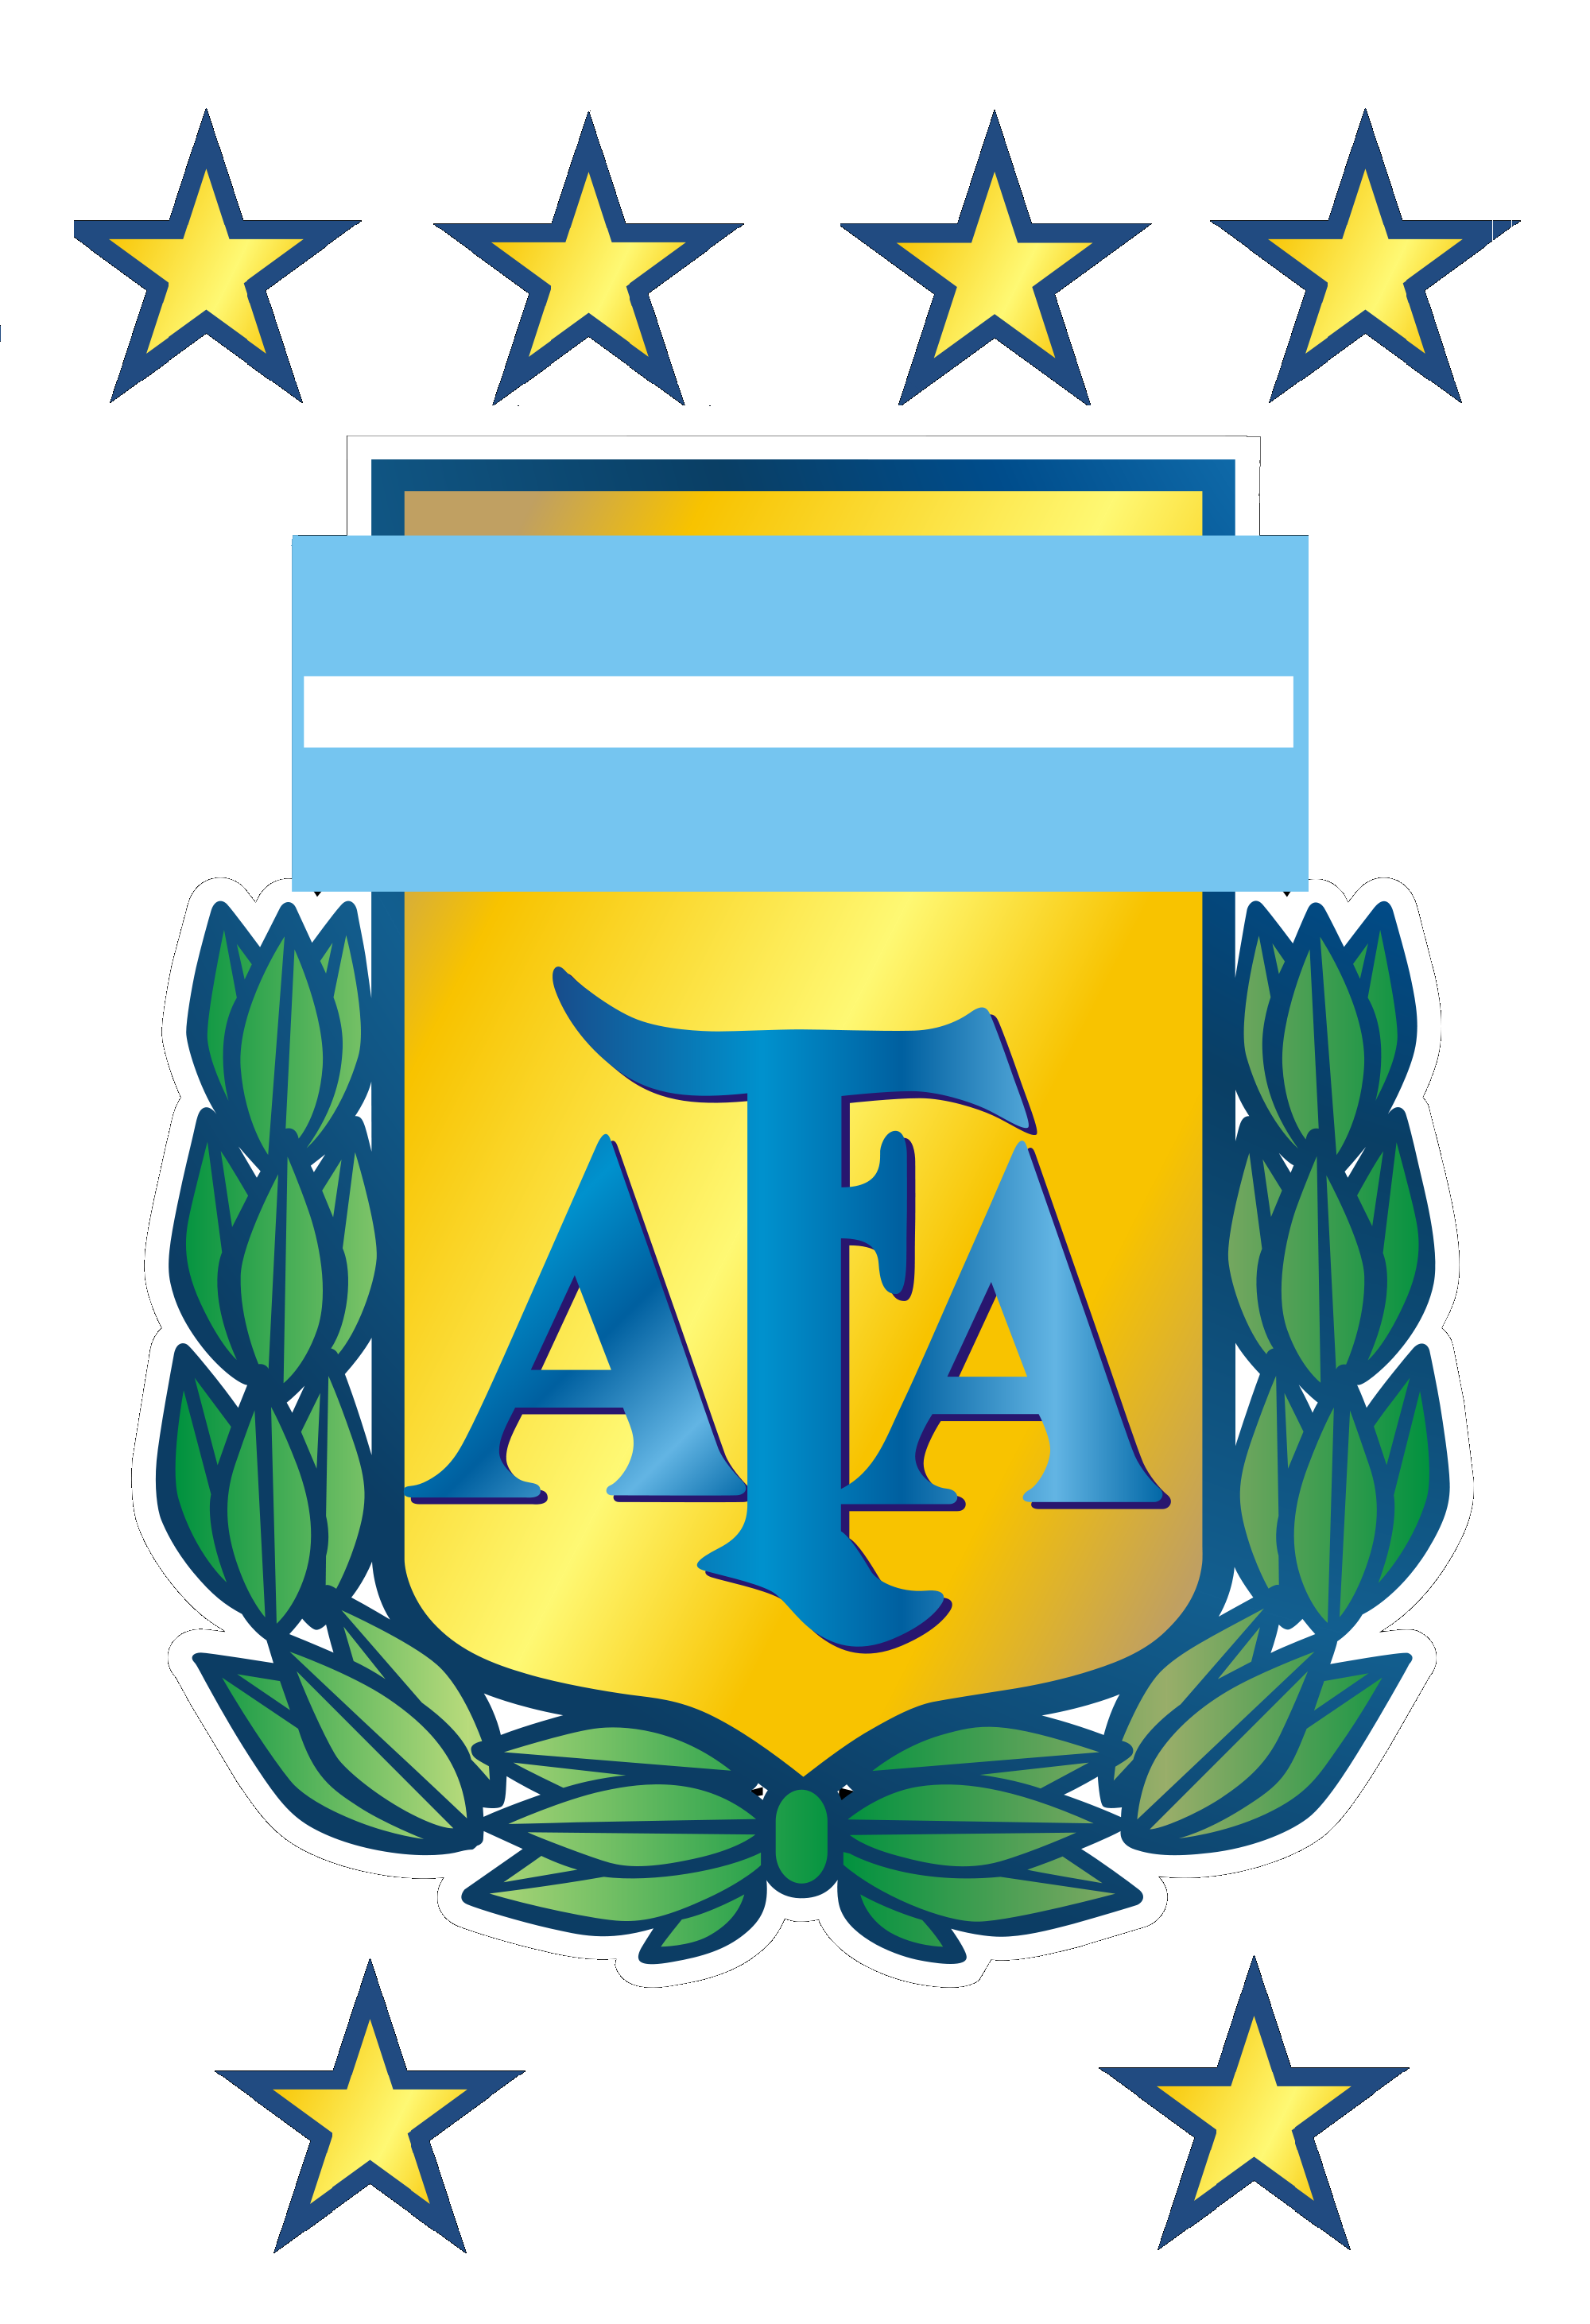 AFA Logo.png, Afa Team PNG - Free PNG